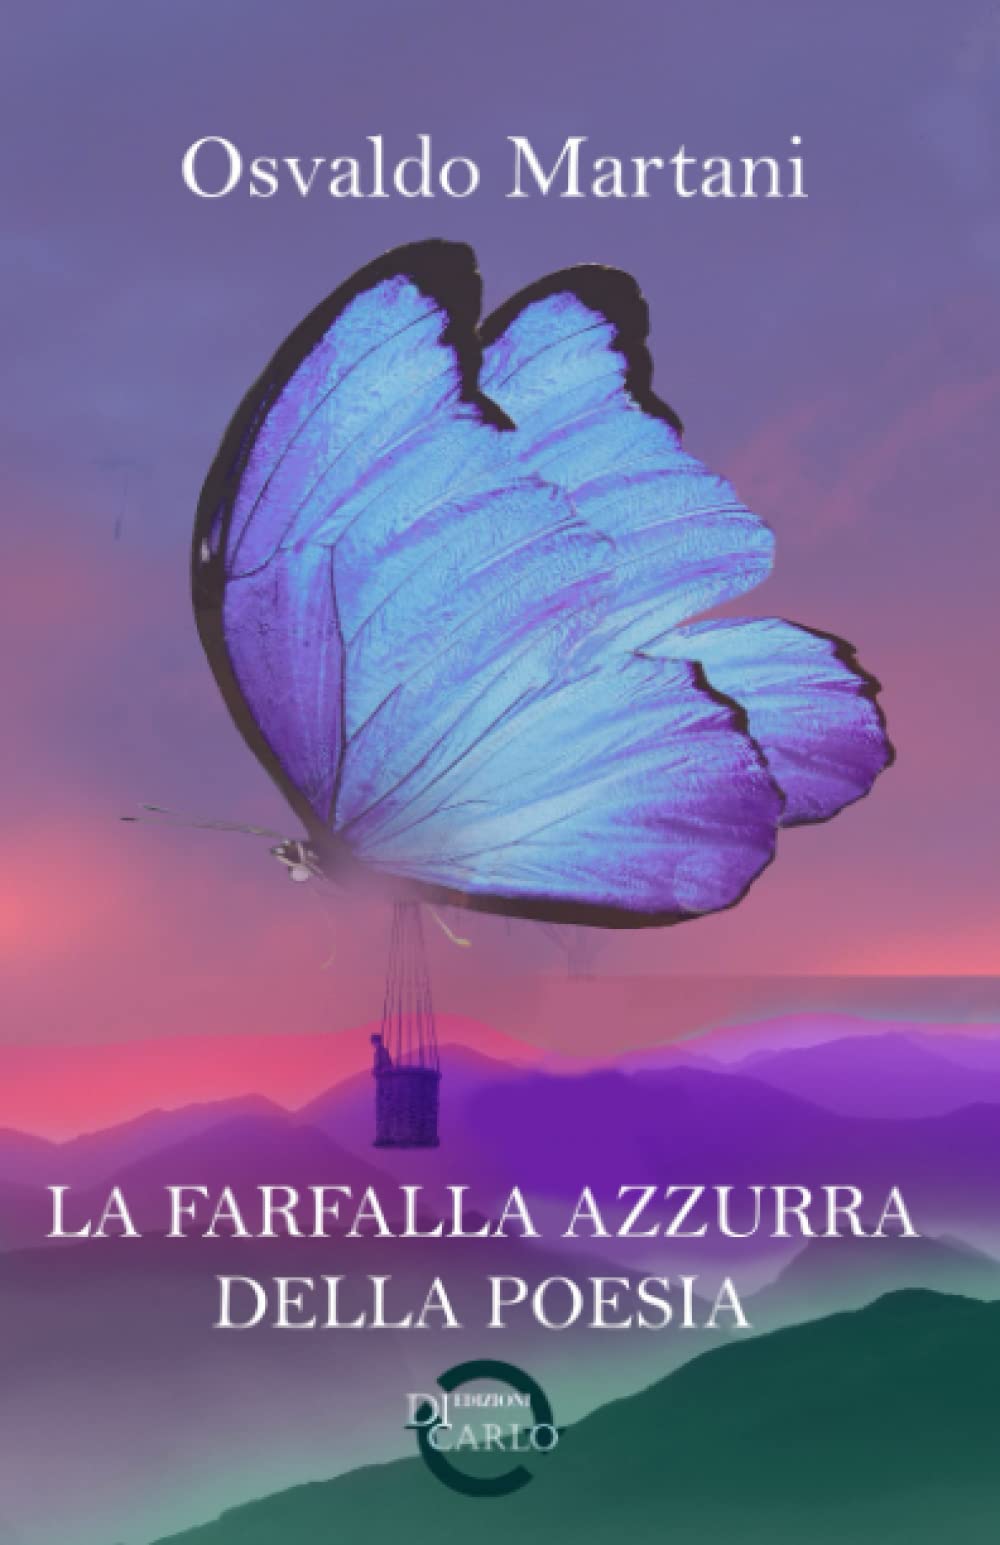 La farfalla azzurra della poesia